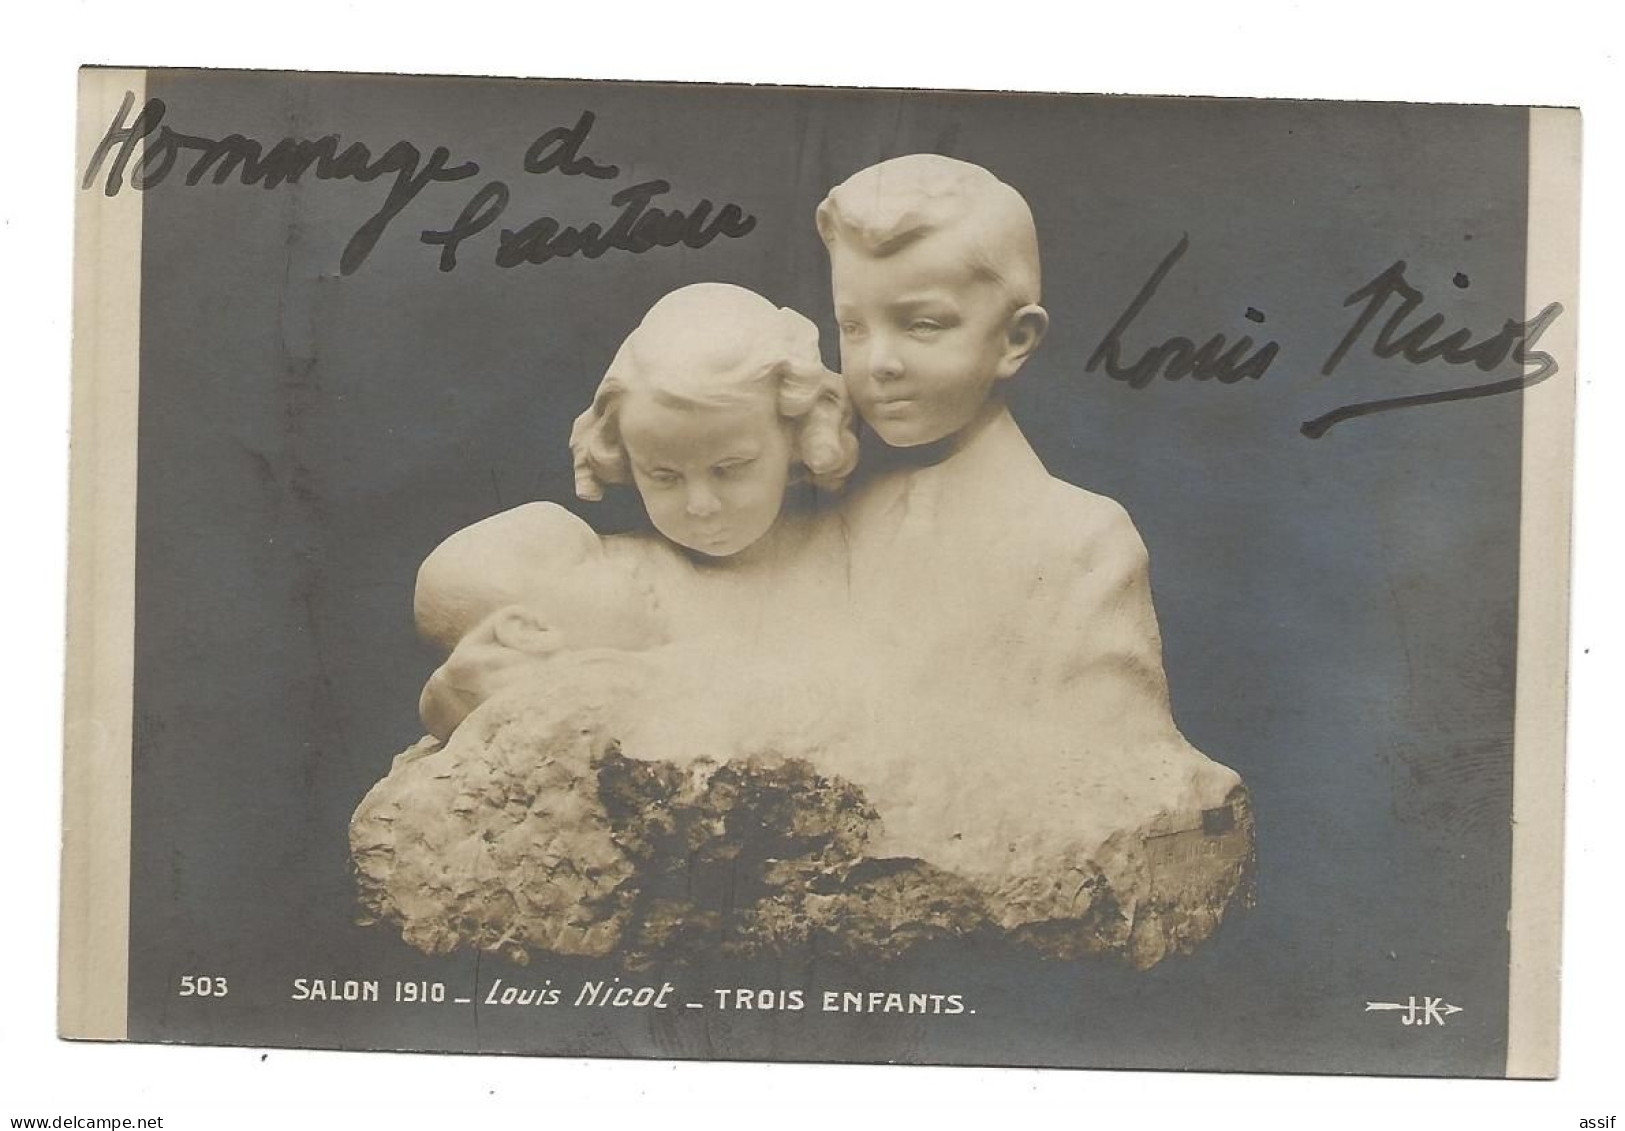 Louis Nicot Salon 1910 Trois Enfants Autographe - Esculturas